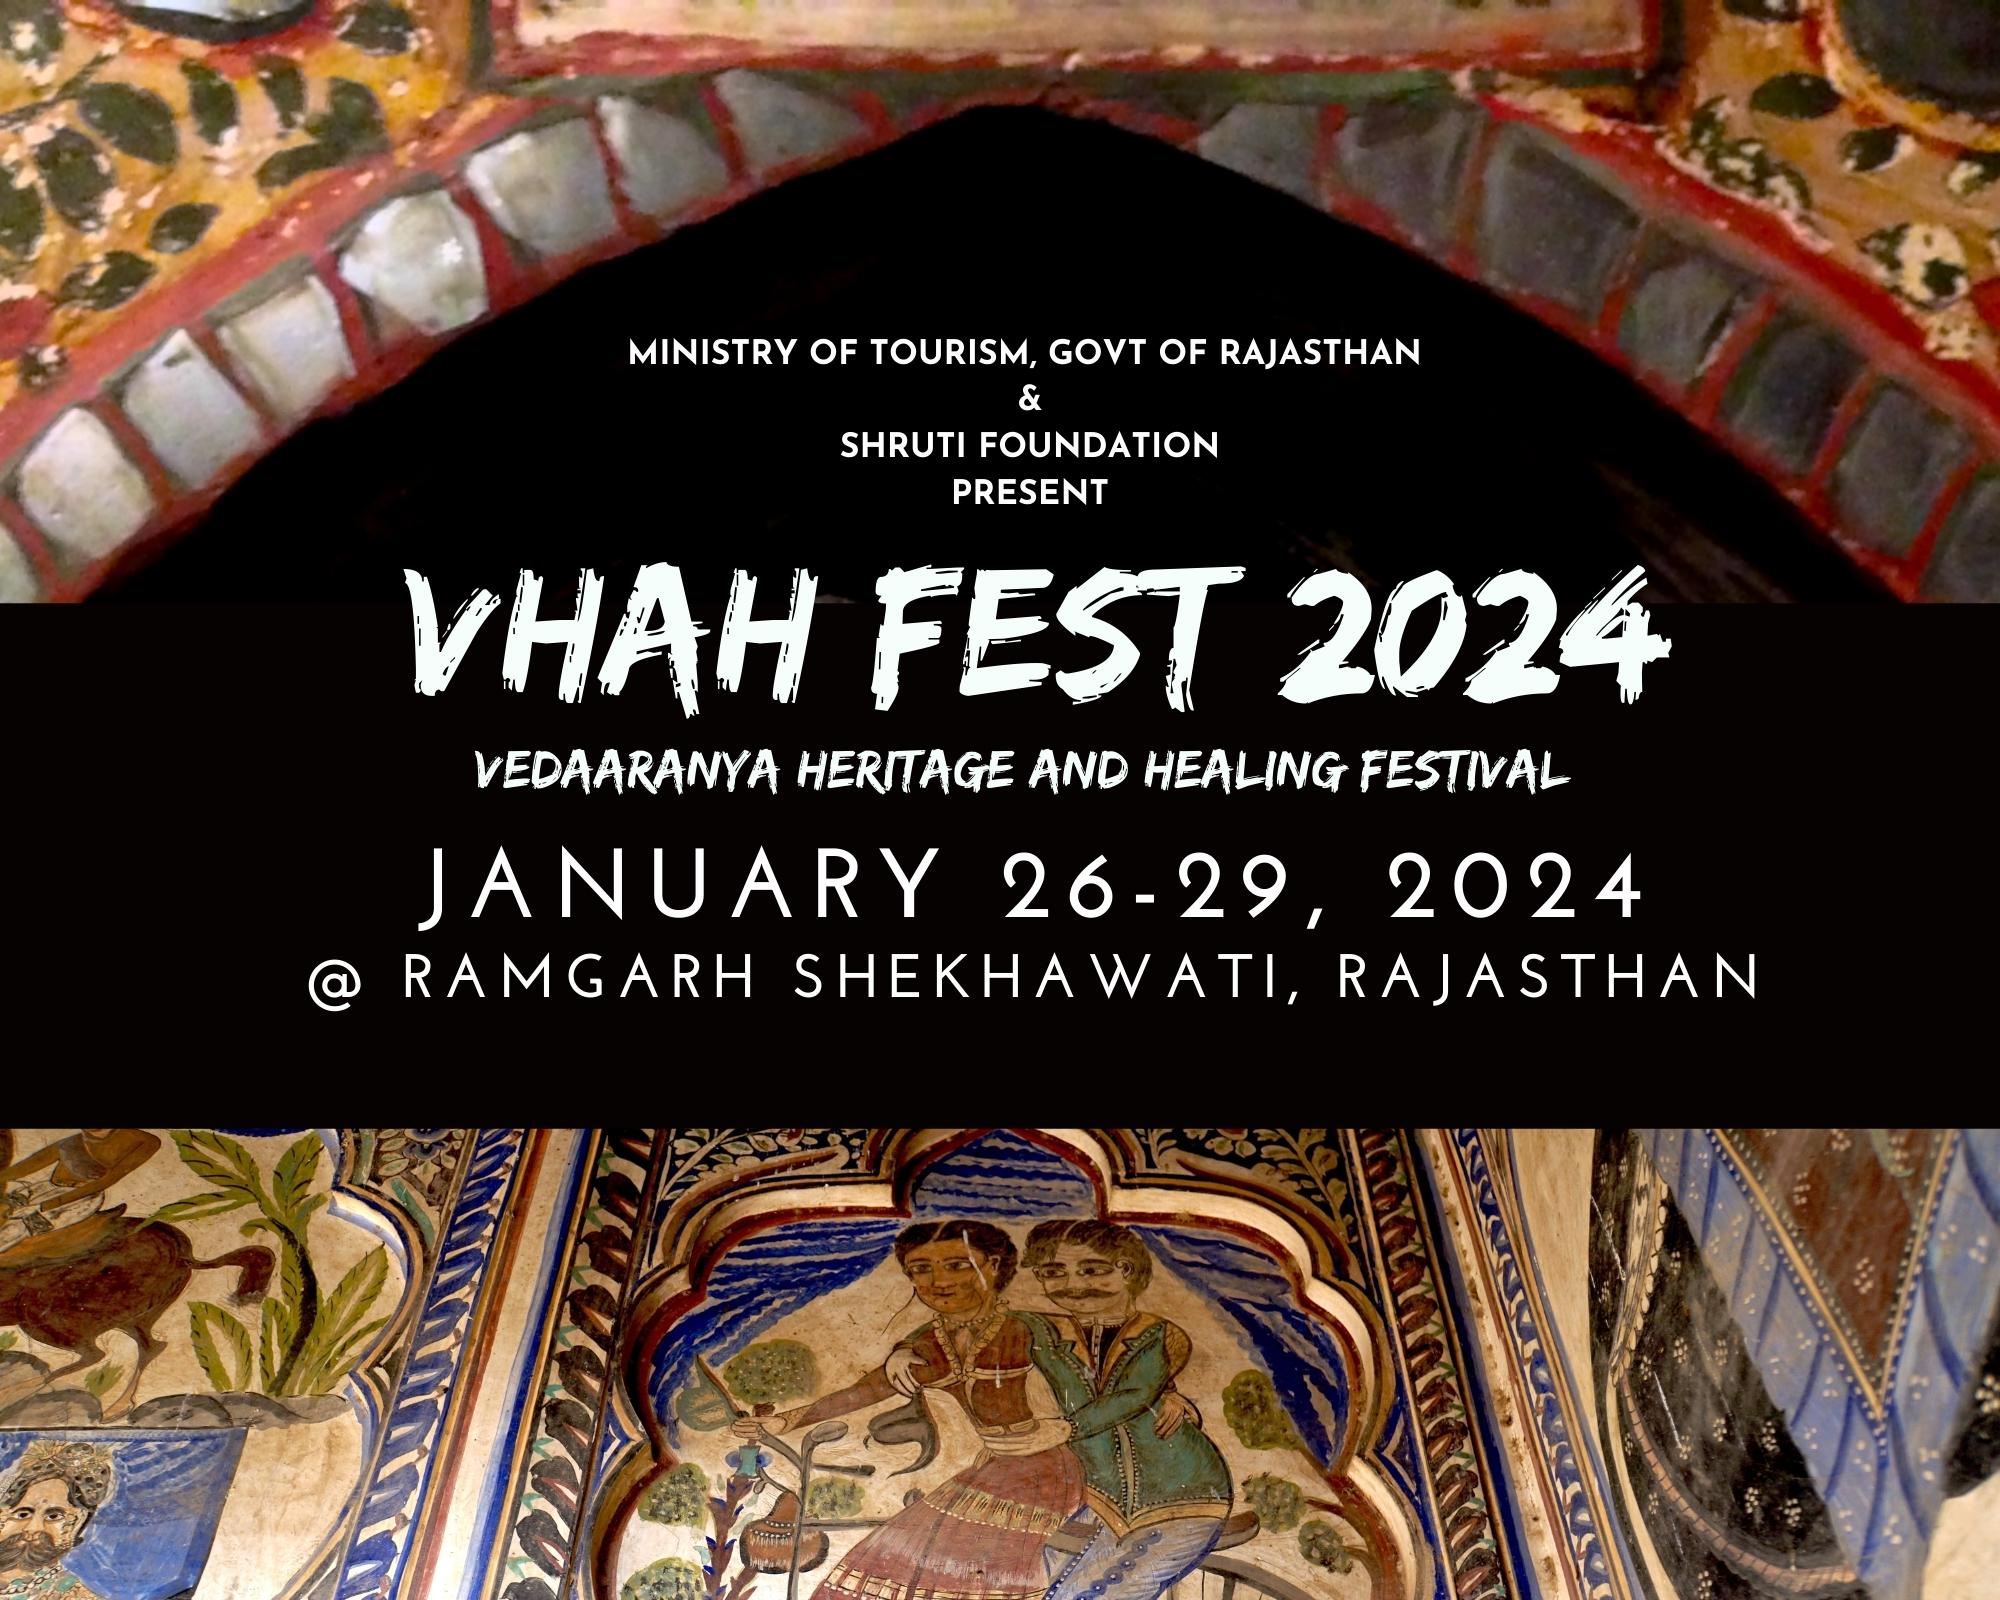 VHAH FEST ( Vedaaranya Heritage and Healing Festival)